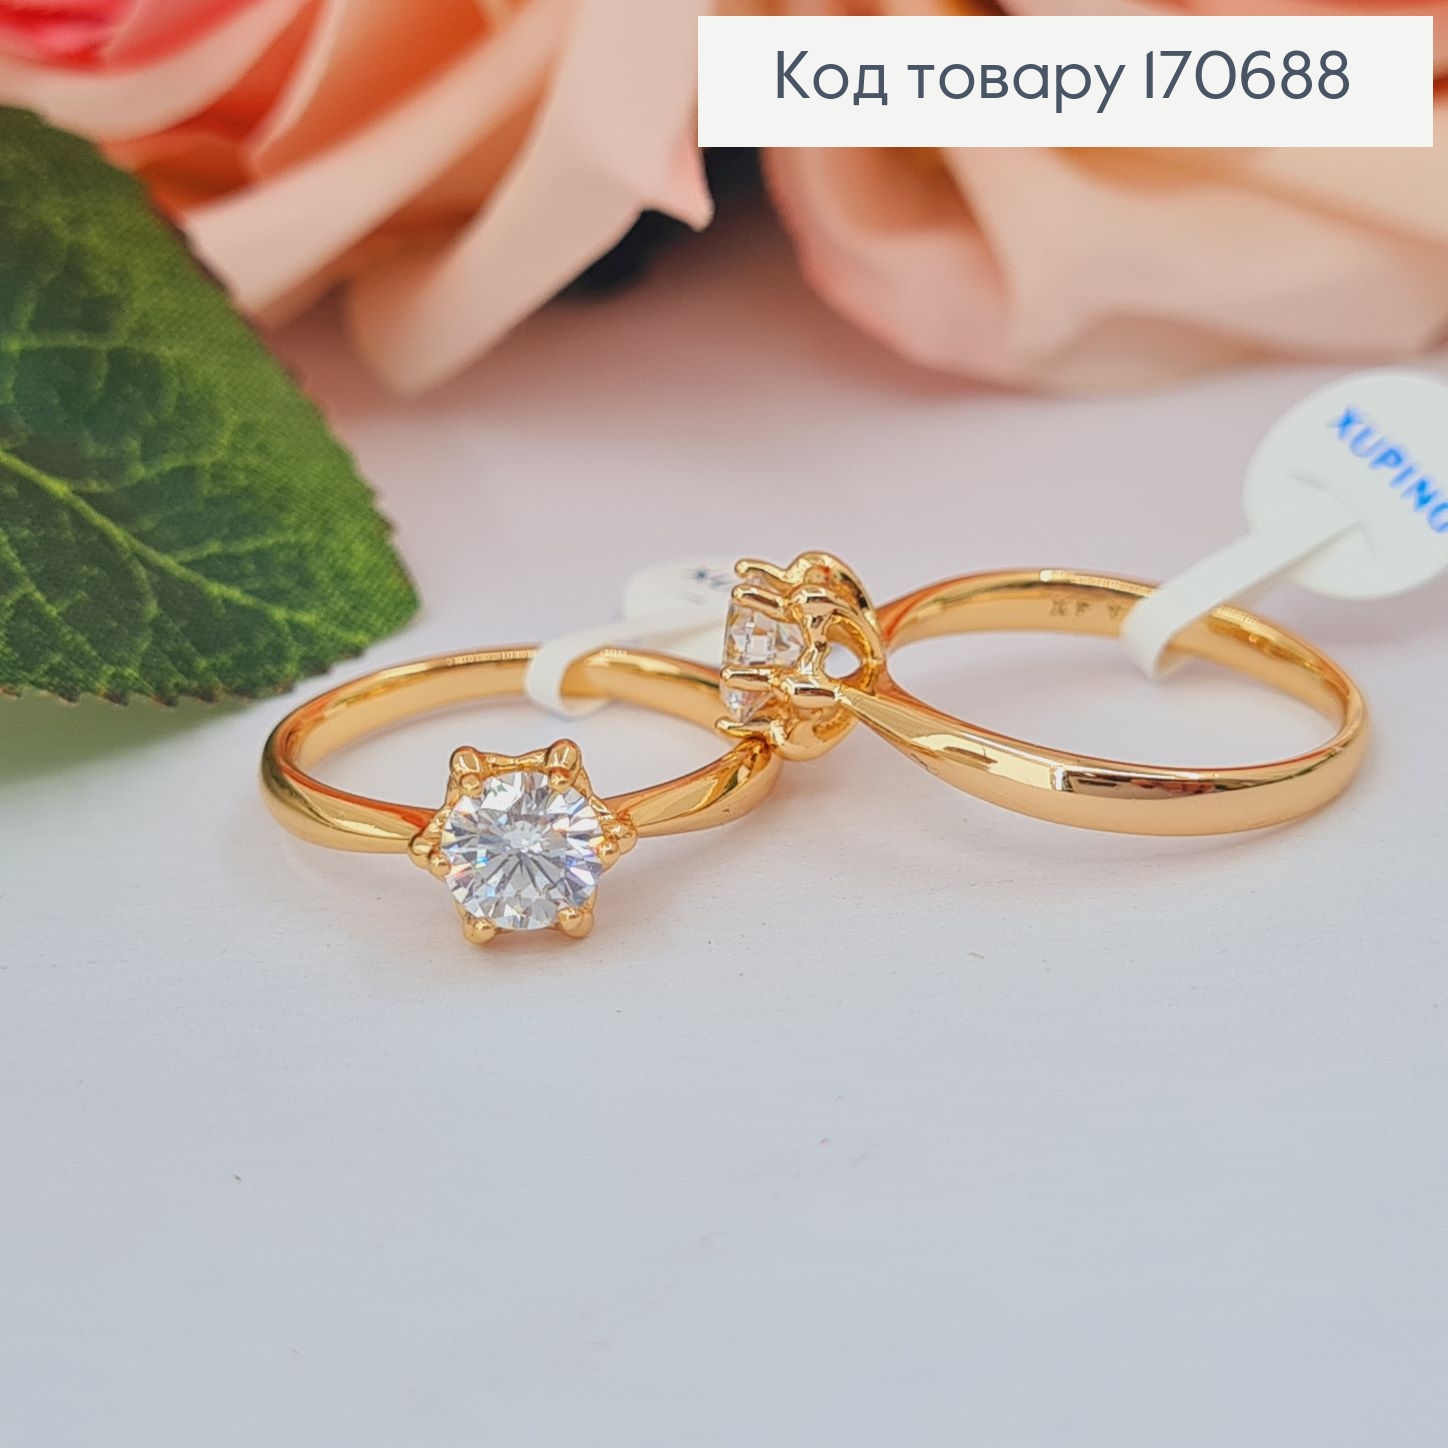 Кольцо Цветок с камнем, Xuping 18К 170688 фото 2